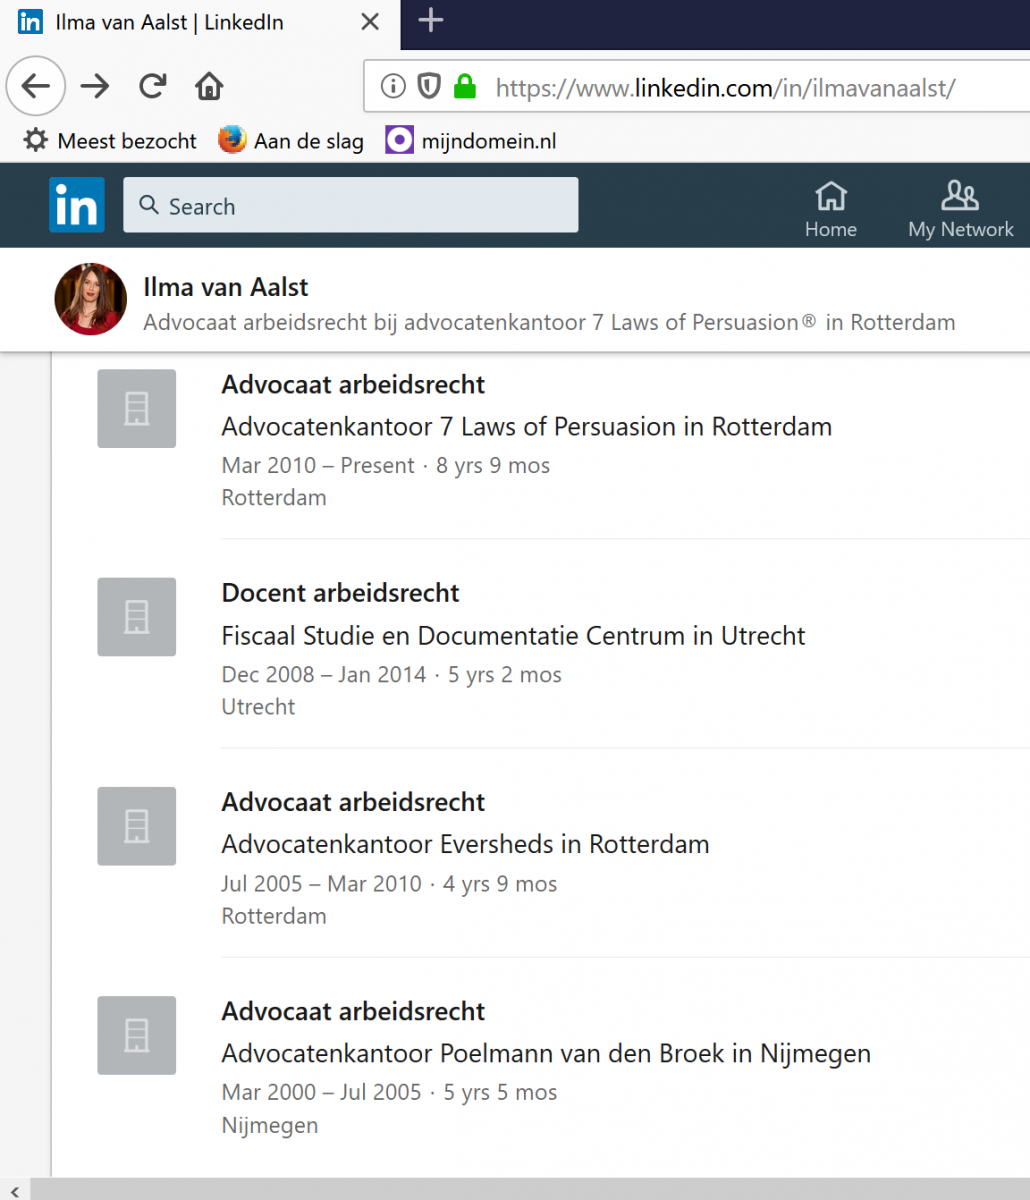 arbeidsrecht-advocaat-Rotterdam-Ilma-van-Aalst-LinkedIn